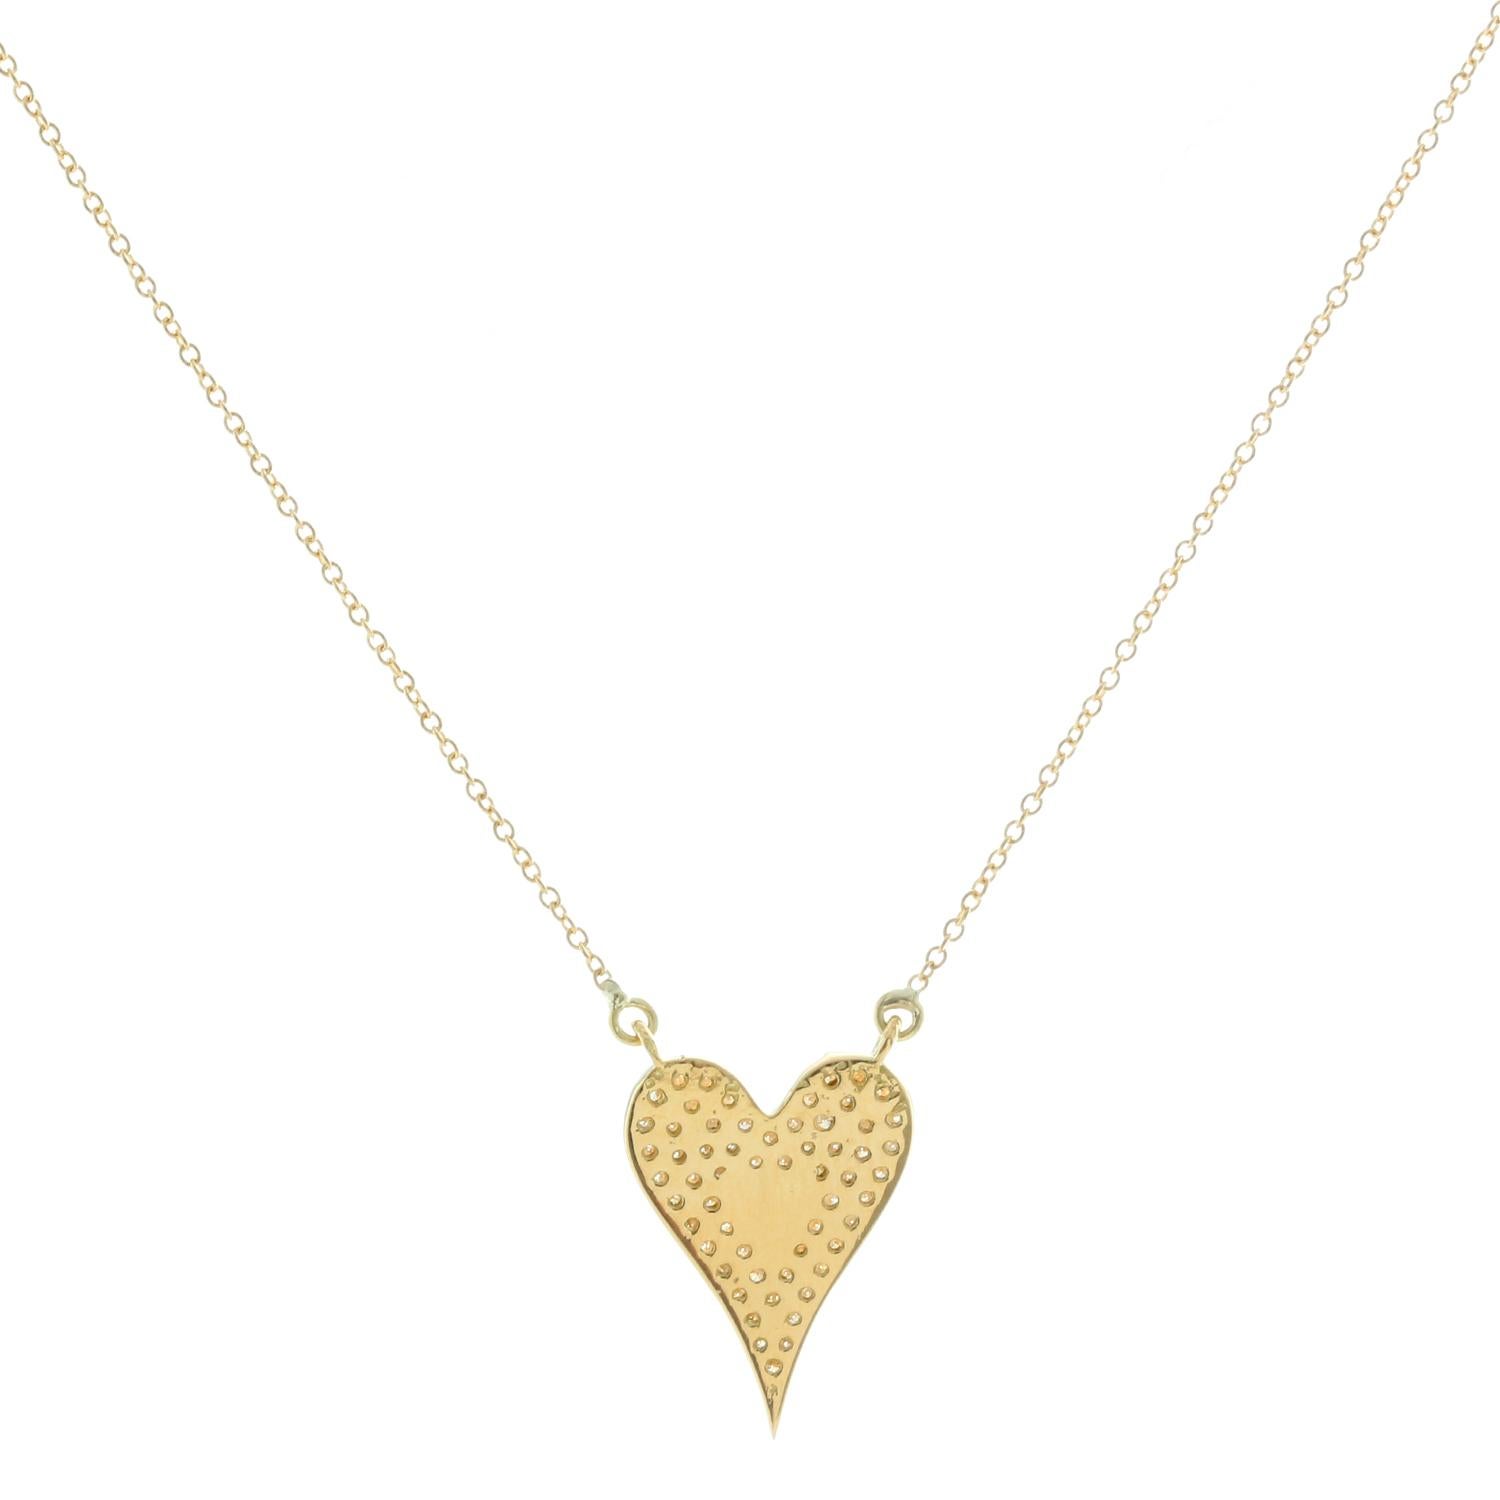 18K Gelbgold Diamant Herz Halskette  - Herzanhänger mit weißem Diamanten und einem Gewicht von 0,60 ct. an einer Kette aus 18 Karat Gelbgold. Gesamtgewicht 4.9 Gramm.  .